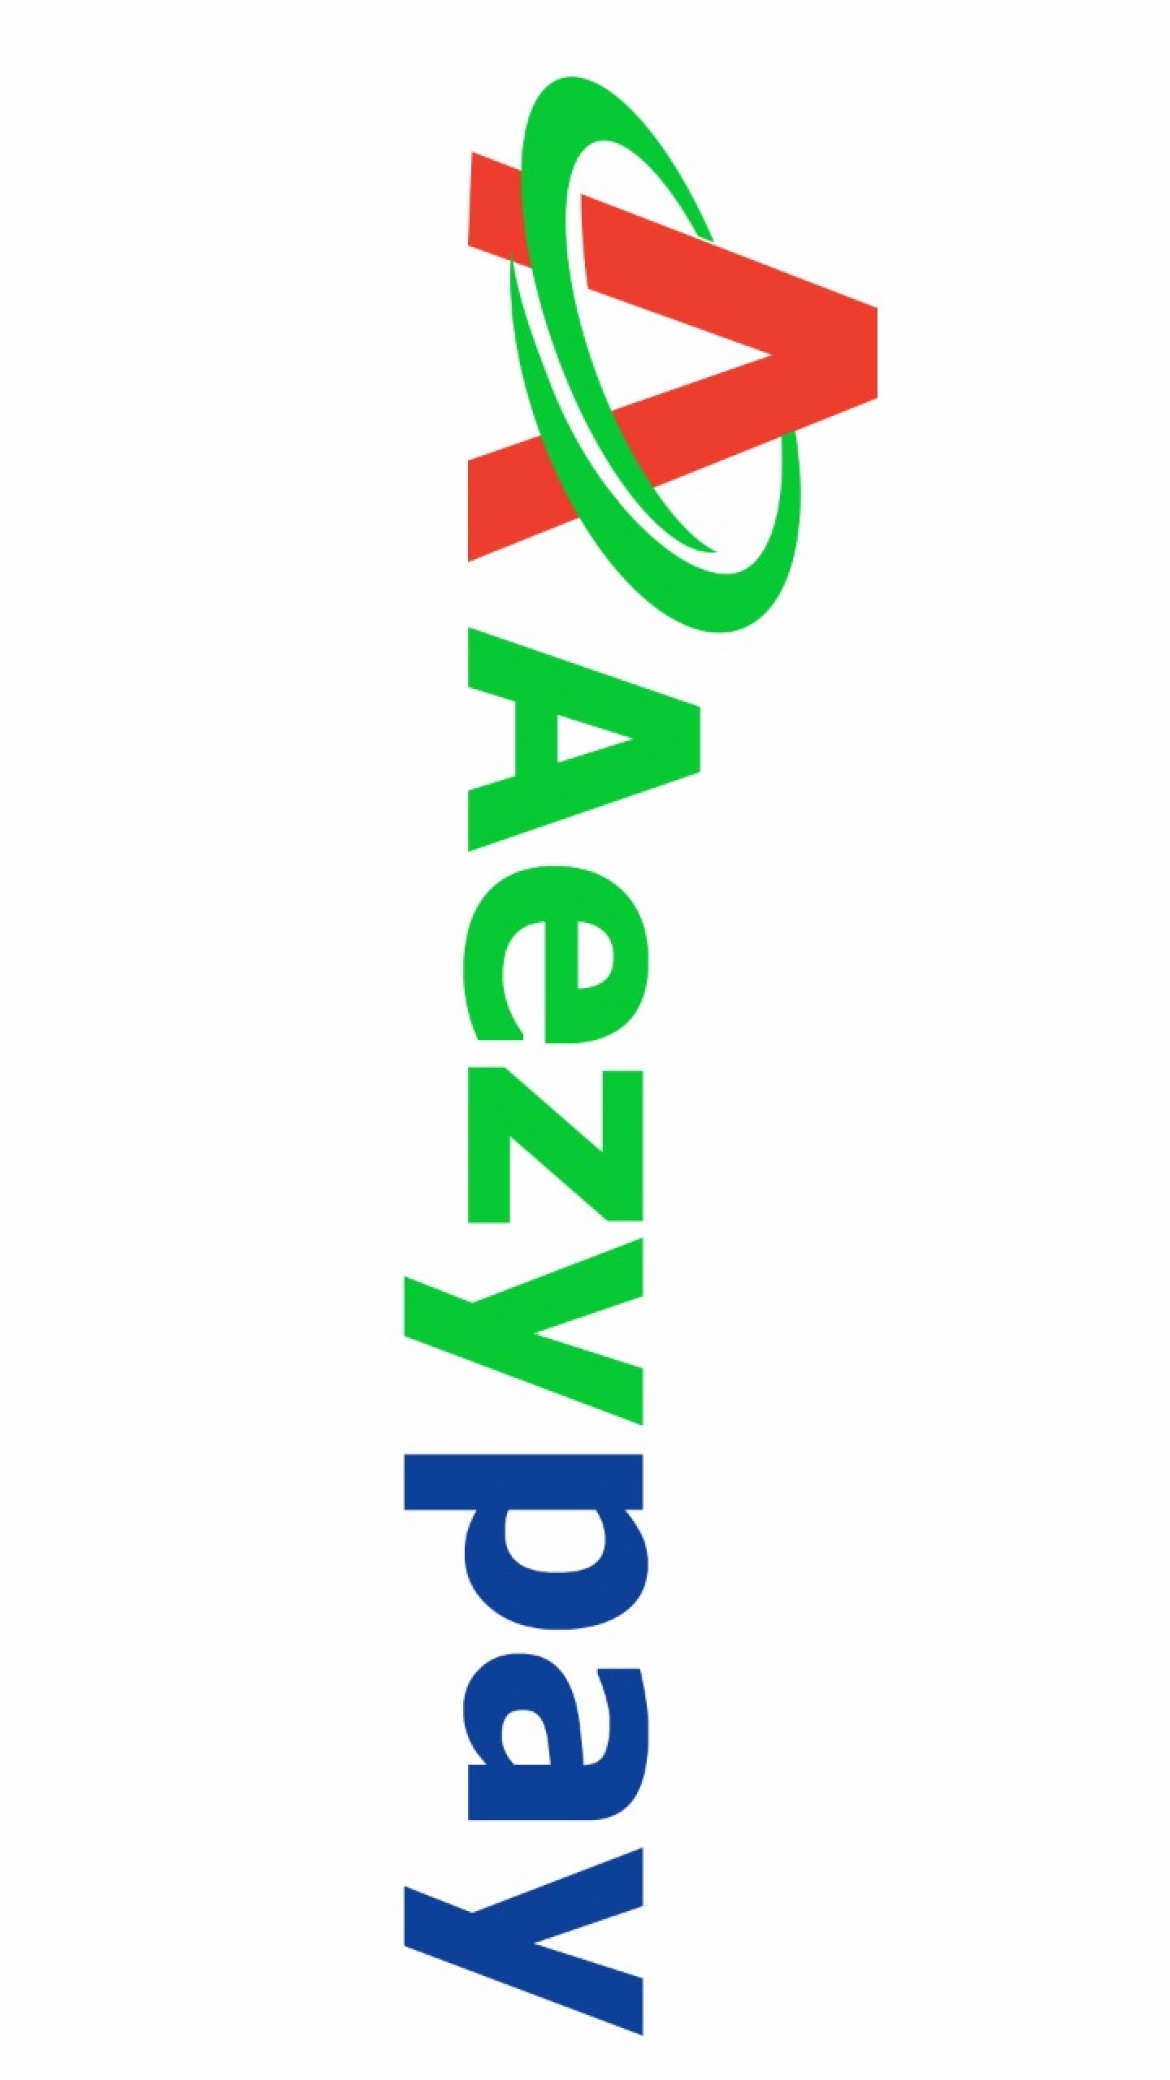 Asia Ezypay Pte Ltd